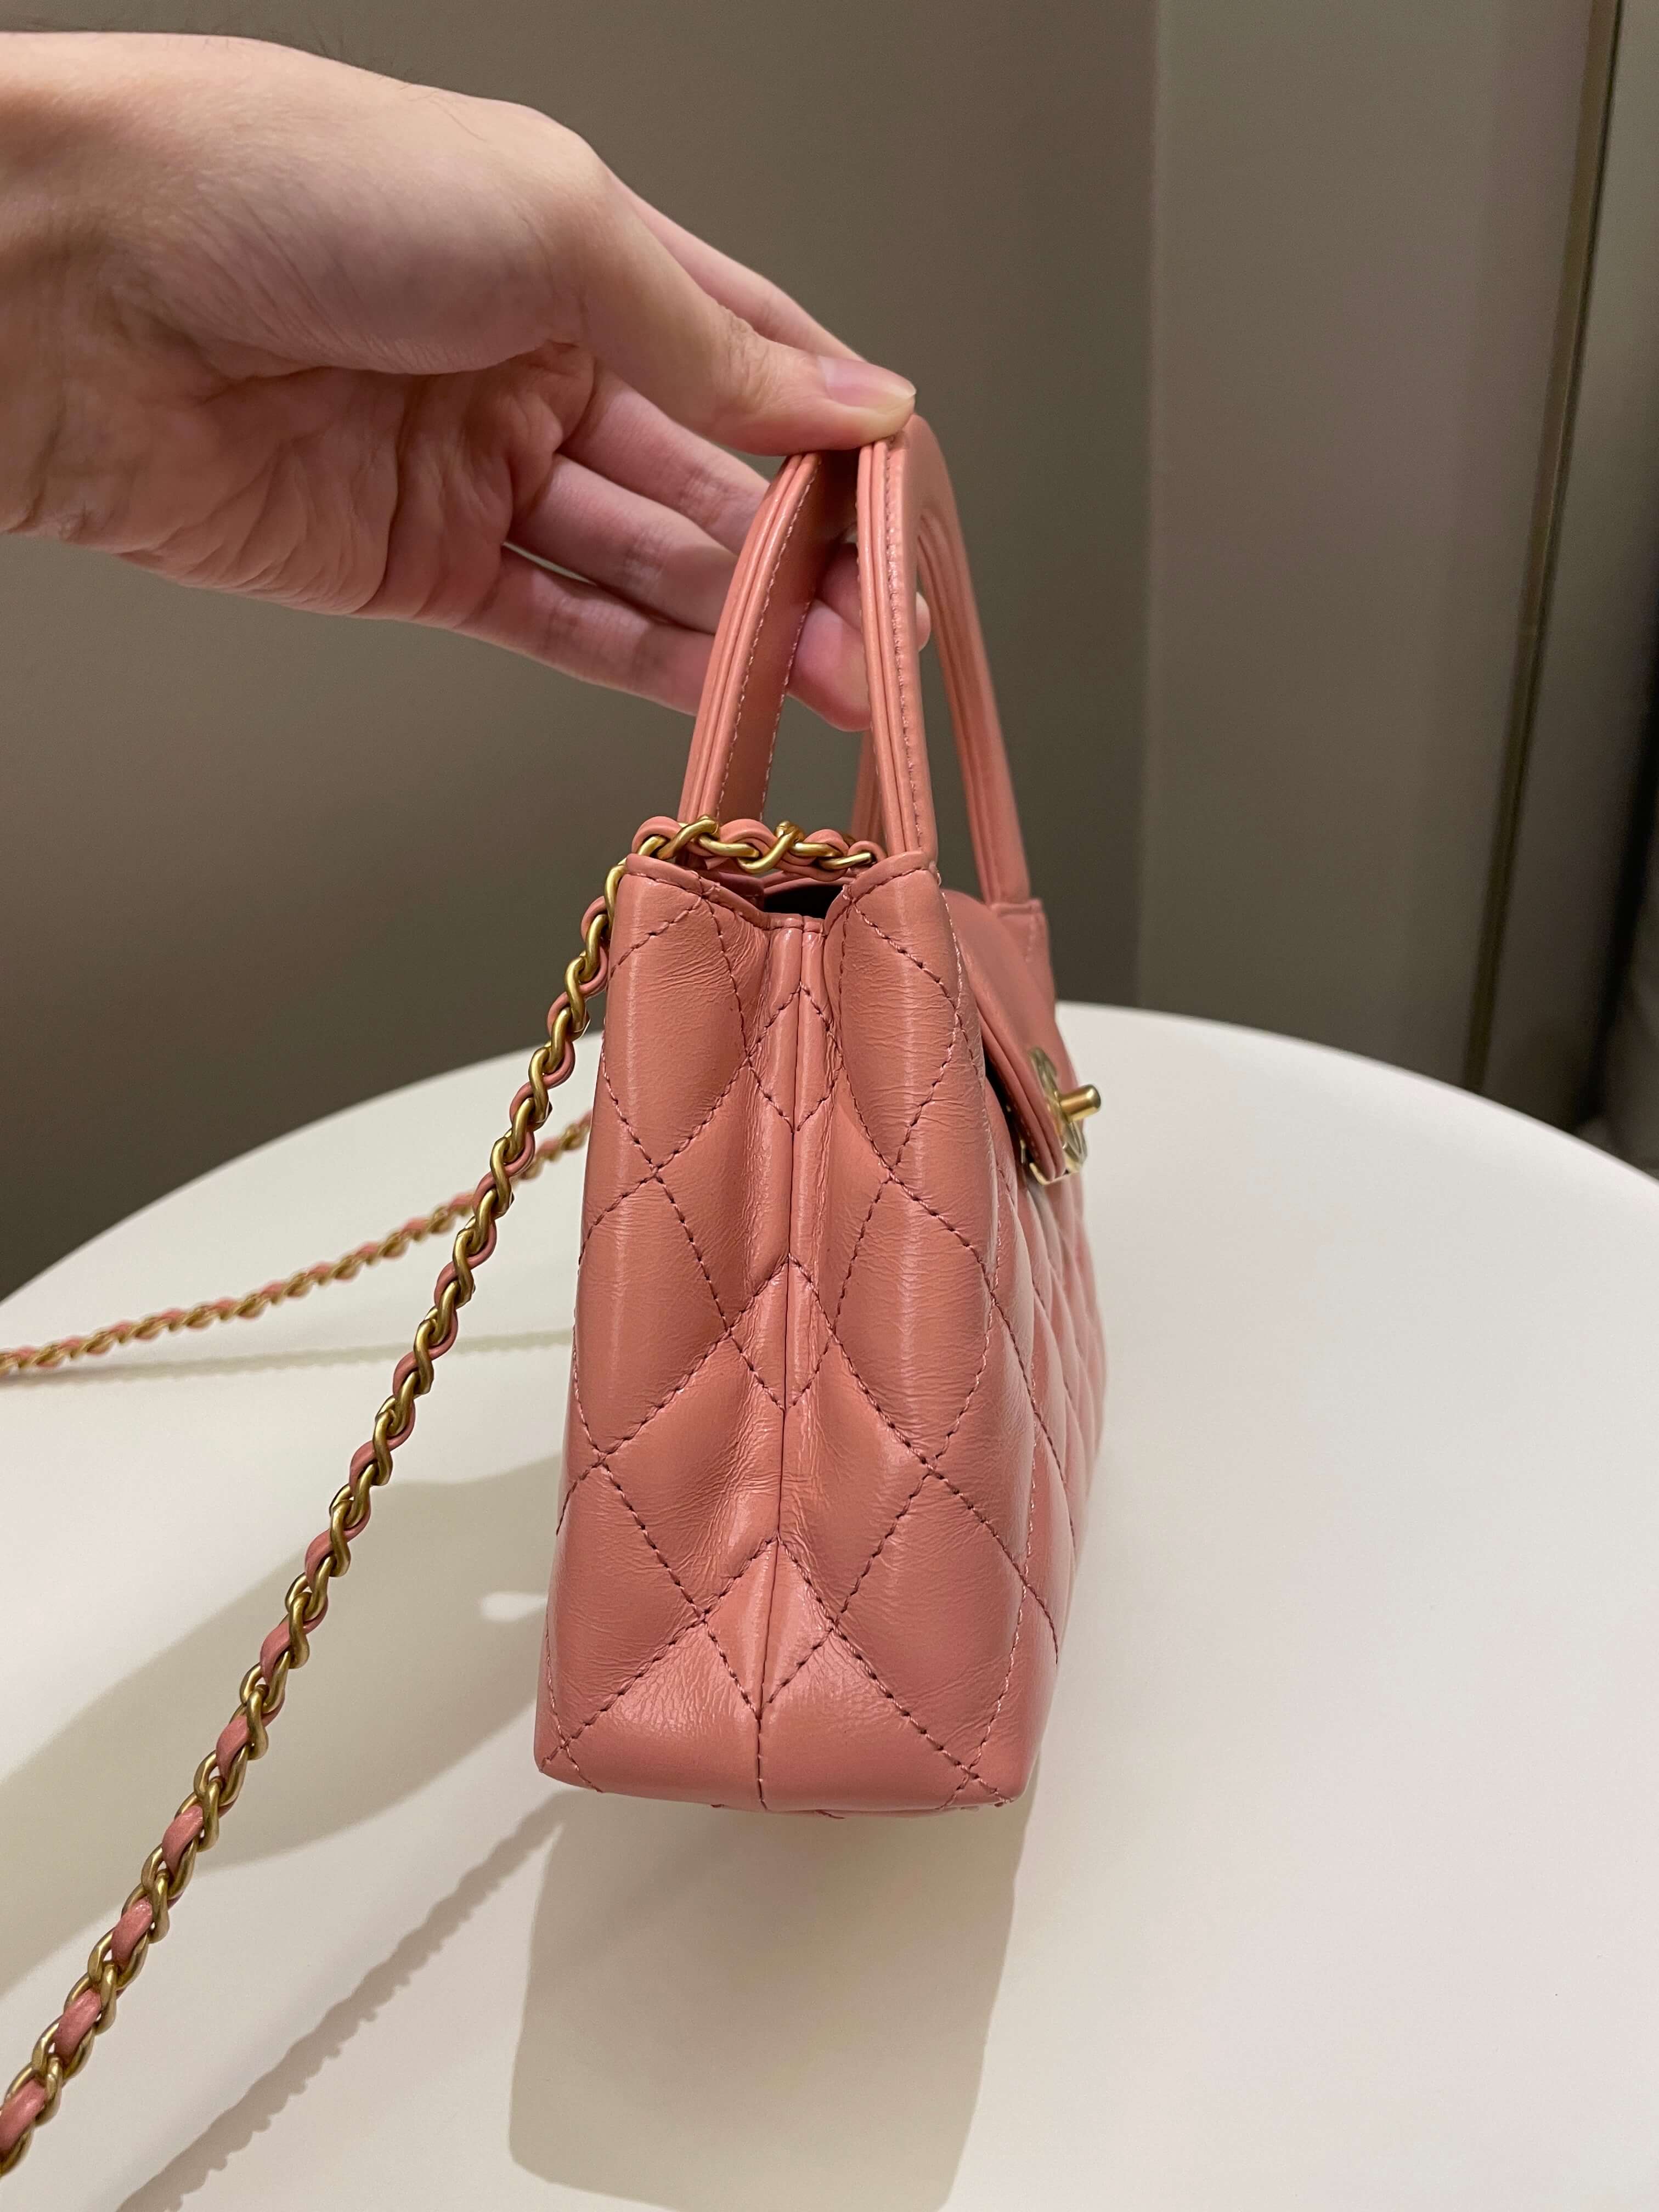 Chanel 23K Kelly Bag Pink Aged Calfskin